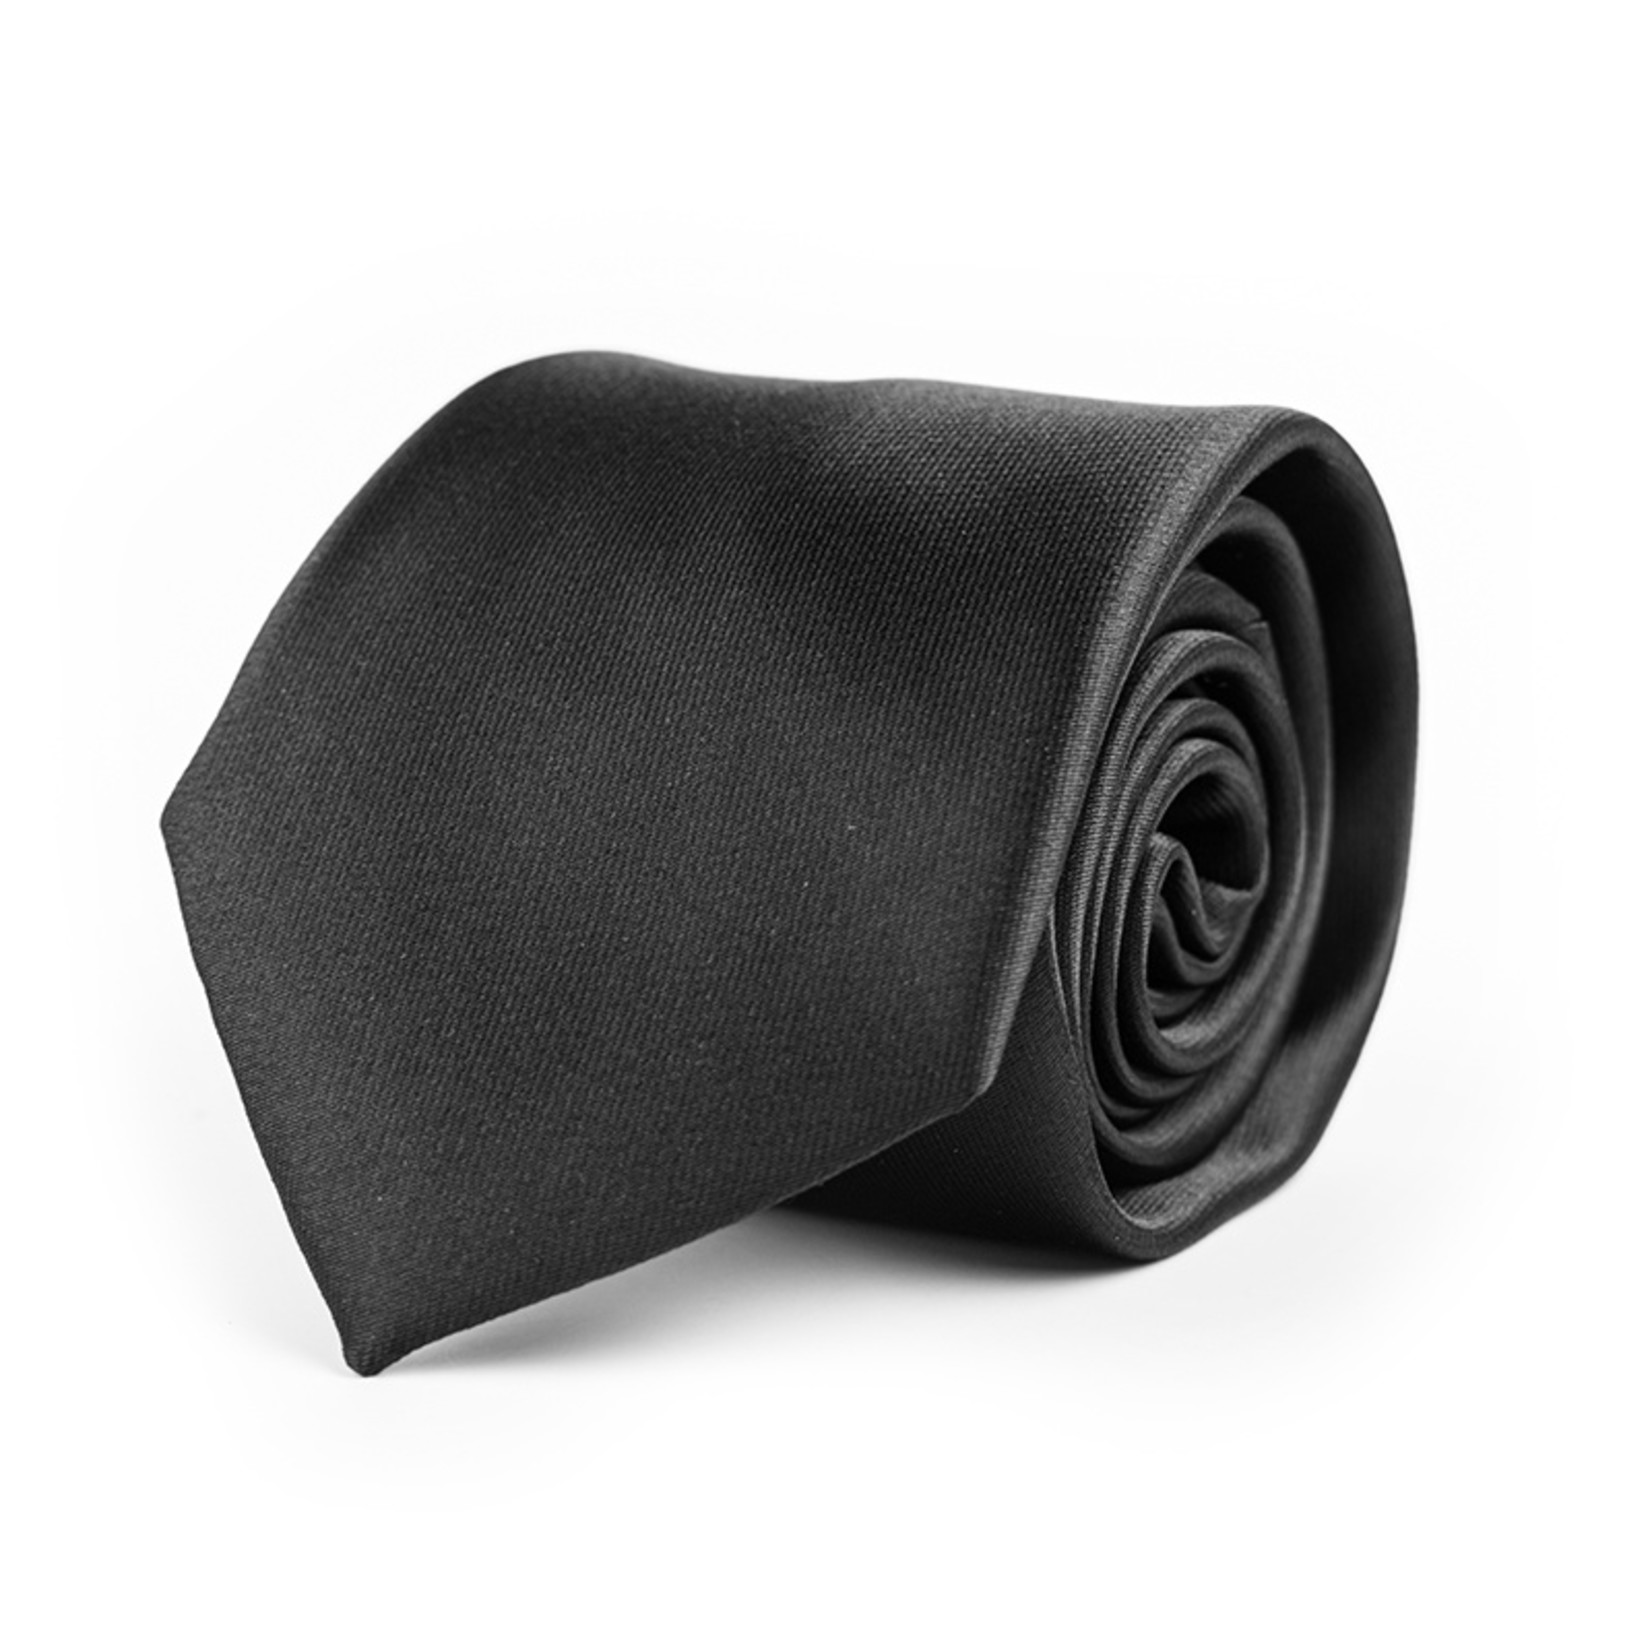 Woodzstyle Tie set | tie | cufflinks | bluez | gift set